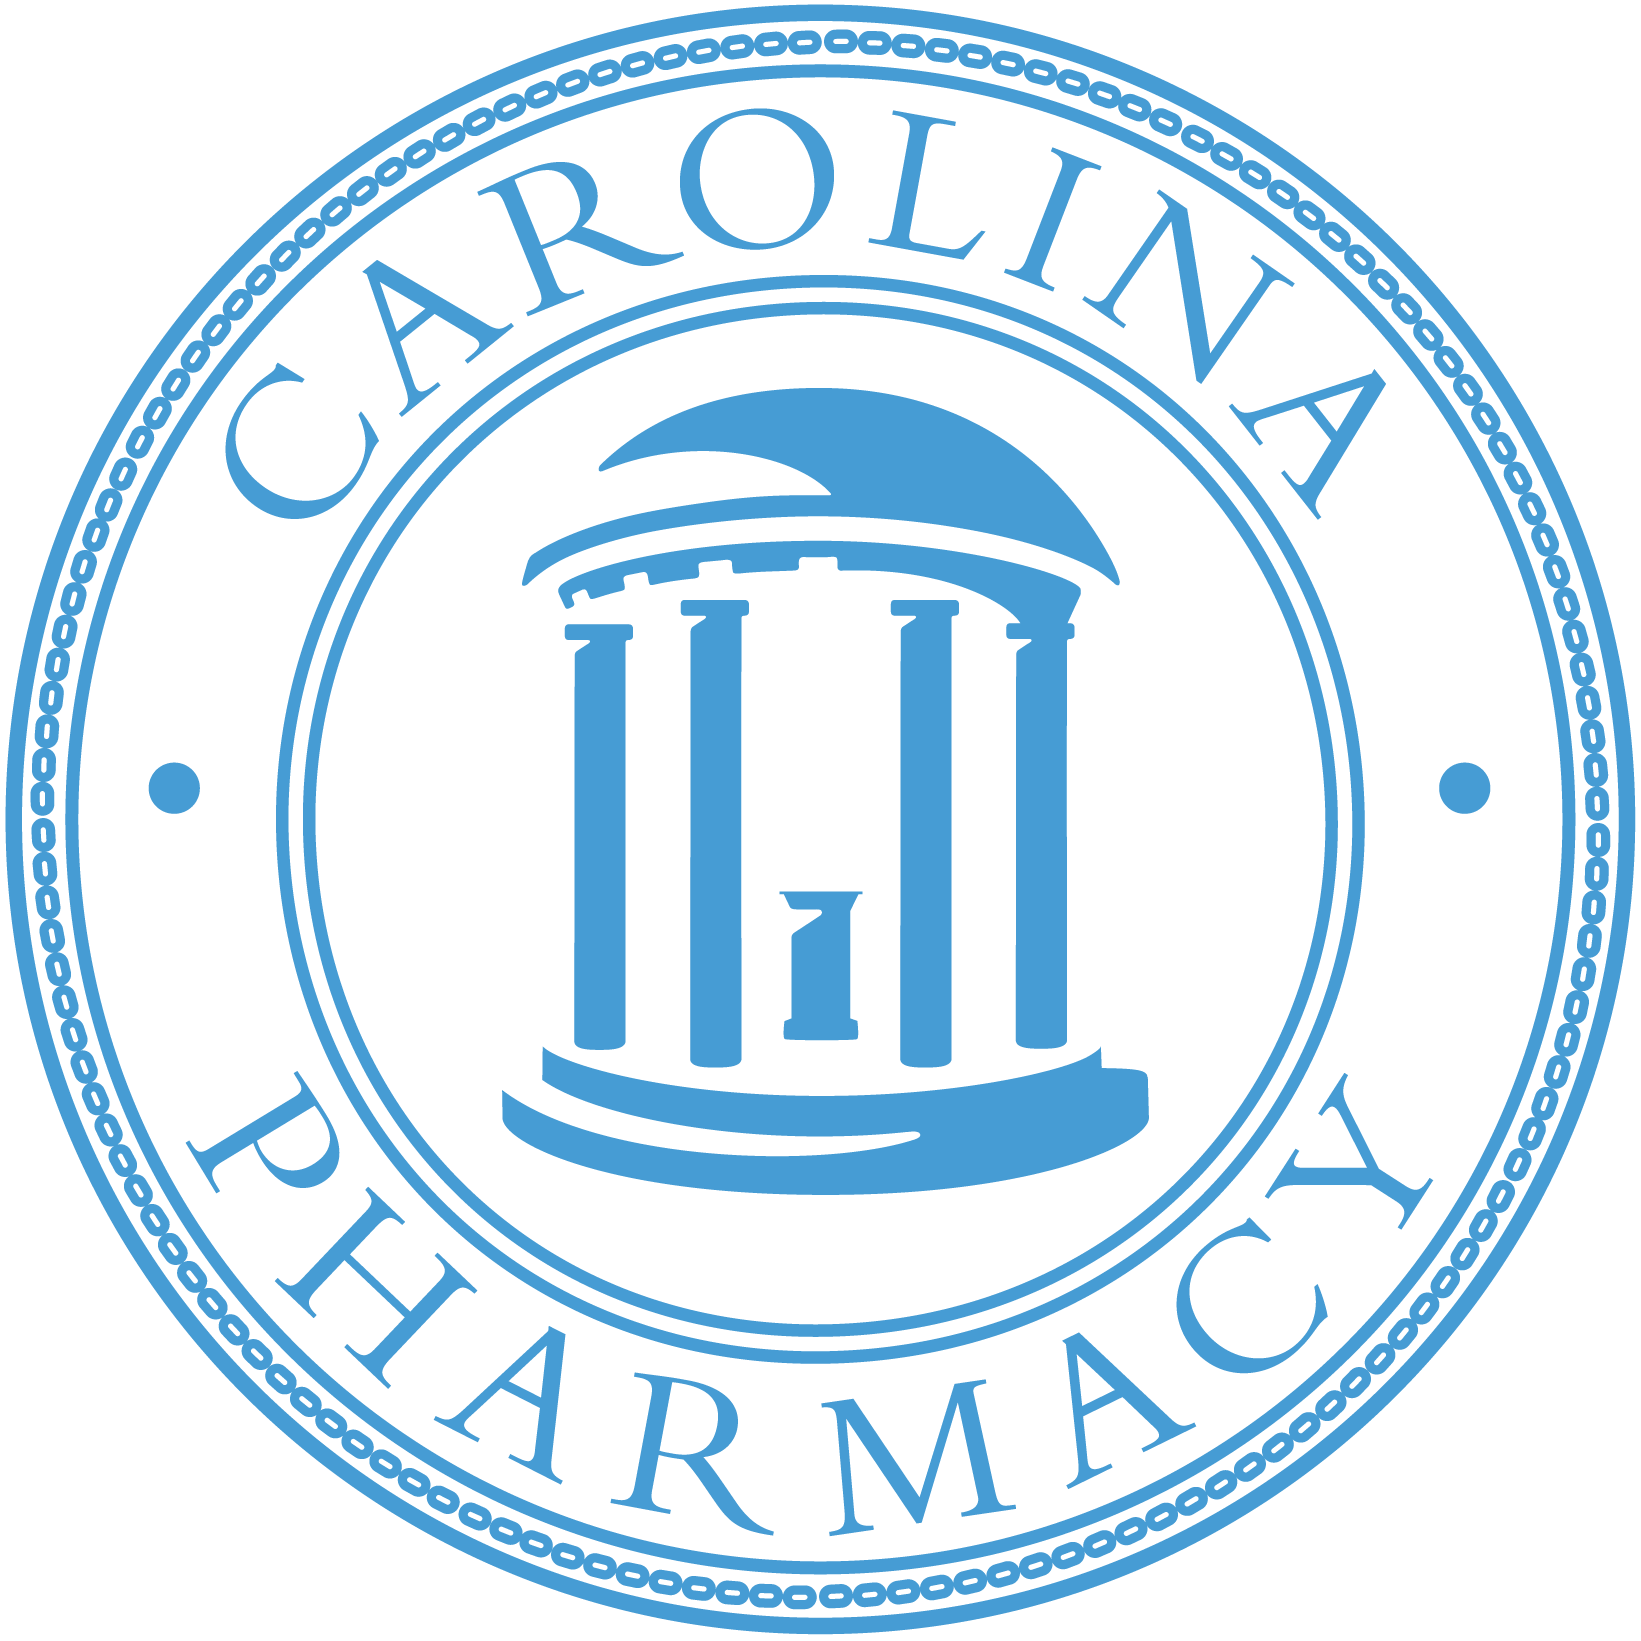 Carolina Pharmacy seal logo